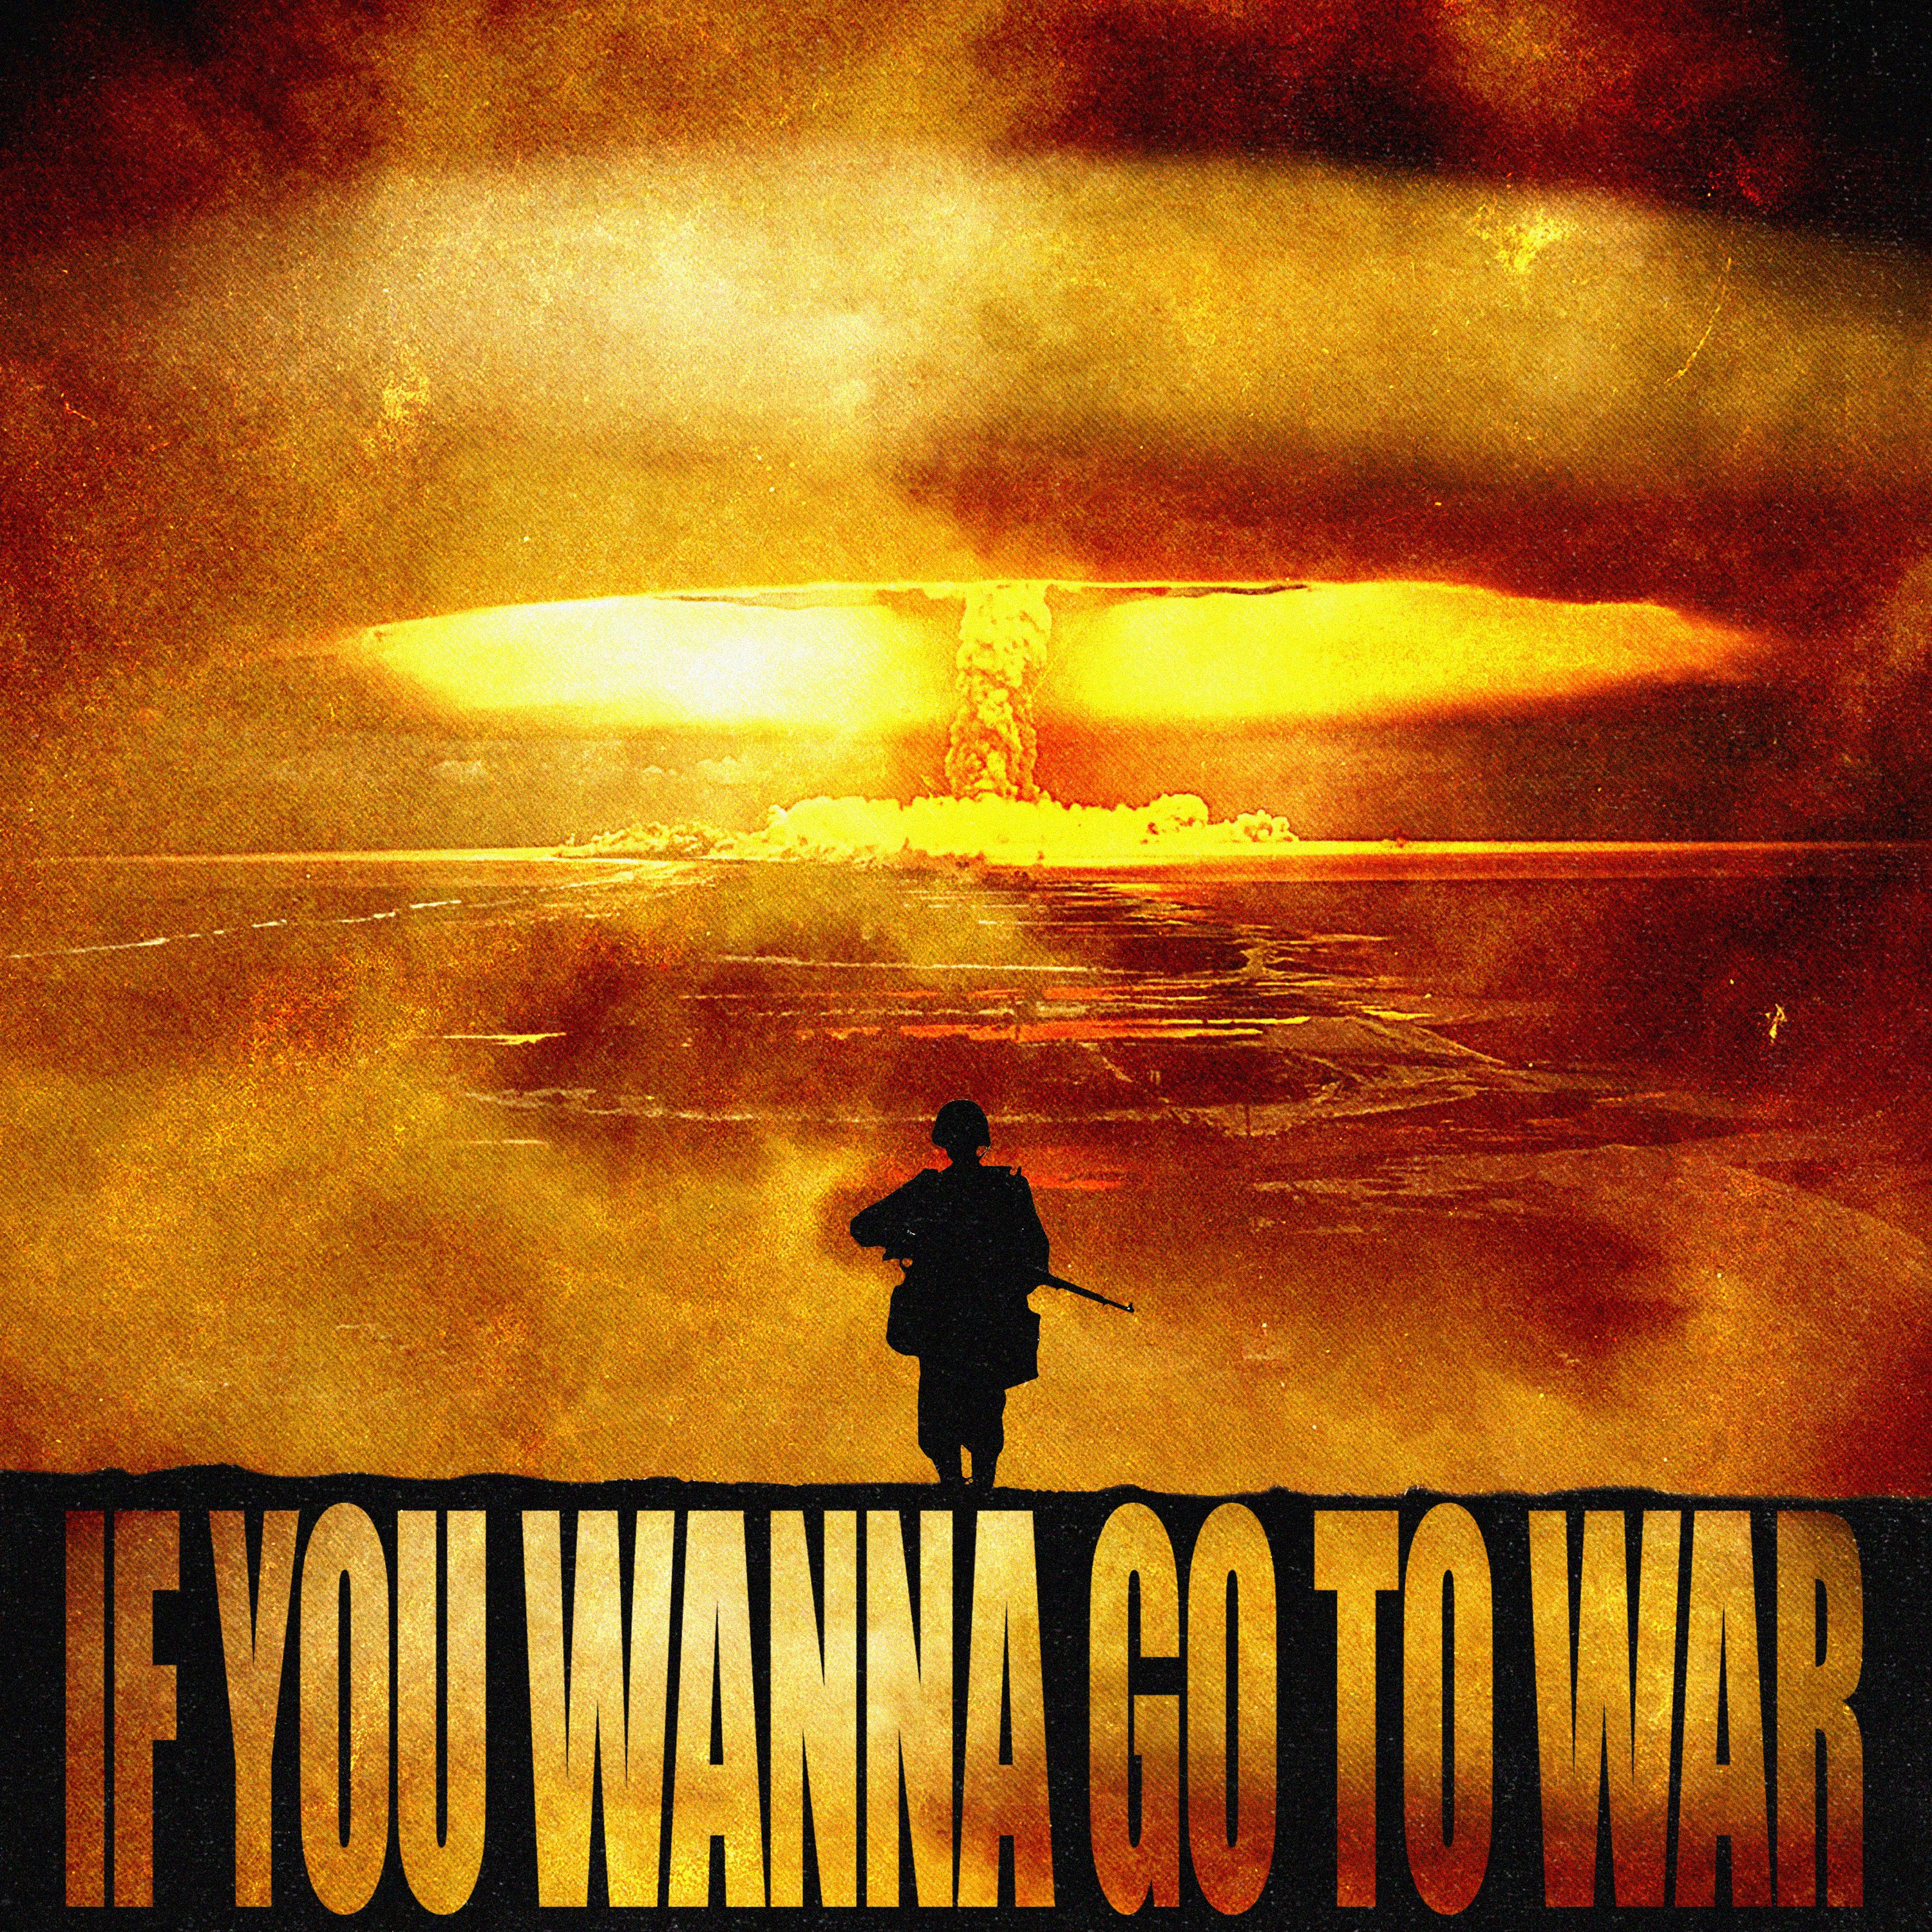 ဒေါင်းလုပ် IF U WANNA GO TO WAR